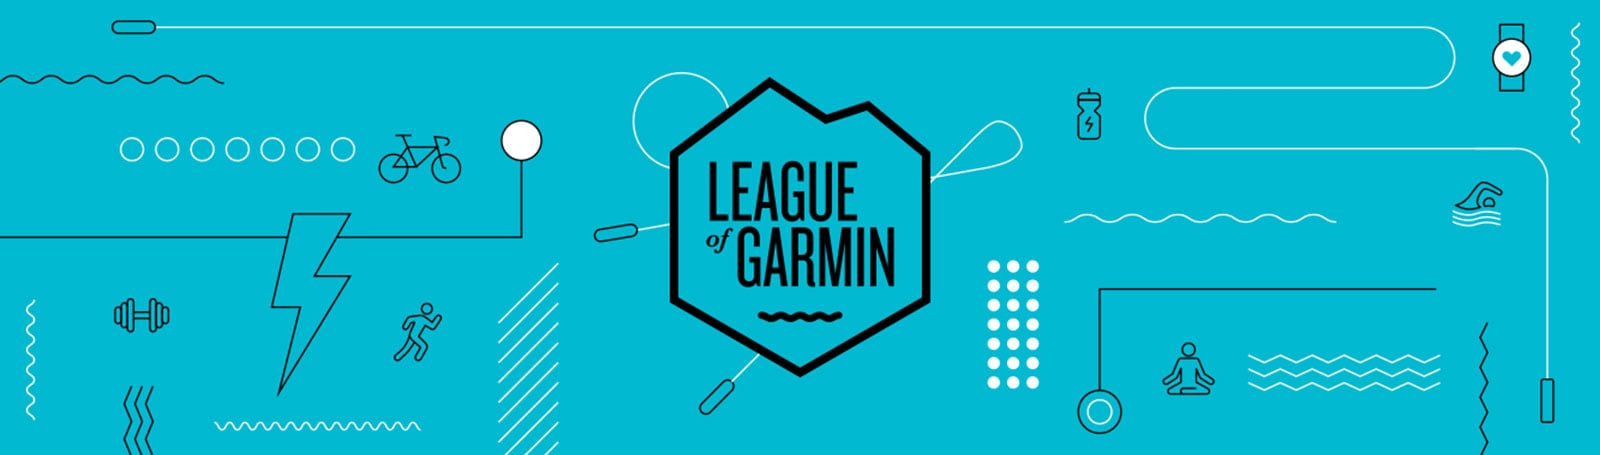 League of Garmin